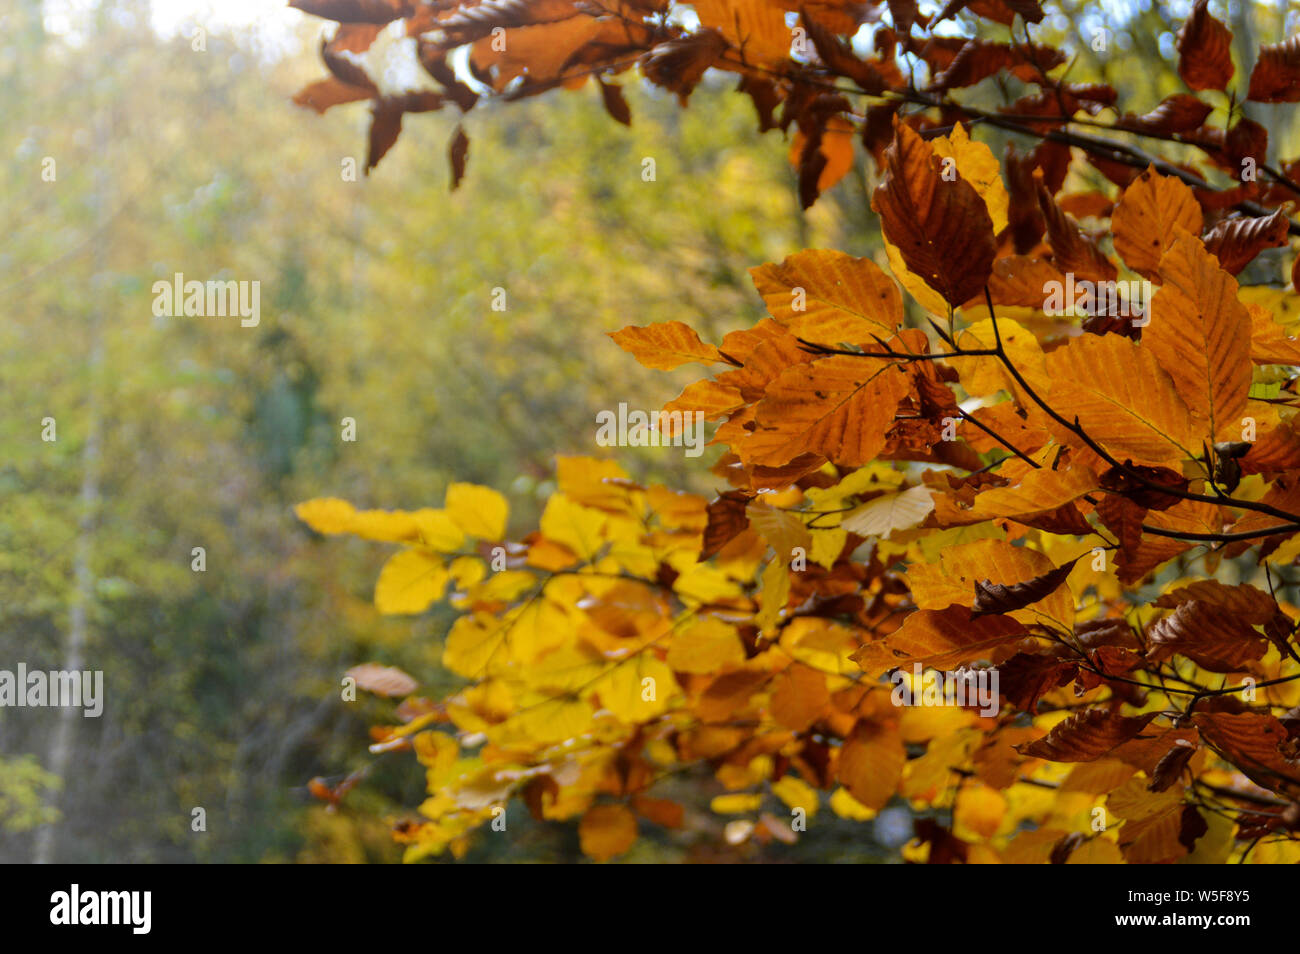 Wechsel in den Herbstfarben im Wald Bäume in bernkastel-kues, Deutschland bedeutet diedie Konzept von Wandel und Kontinuität des Lebens Stockfoto